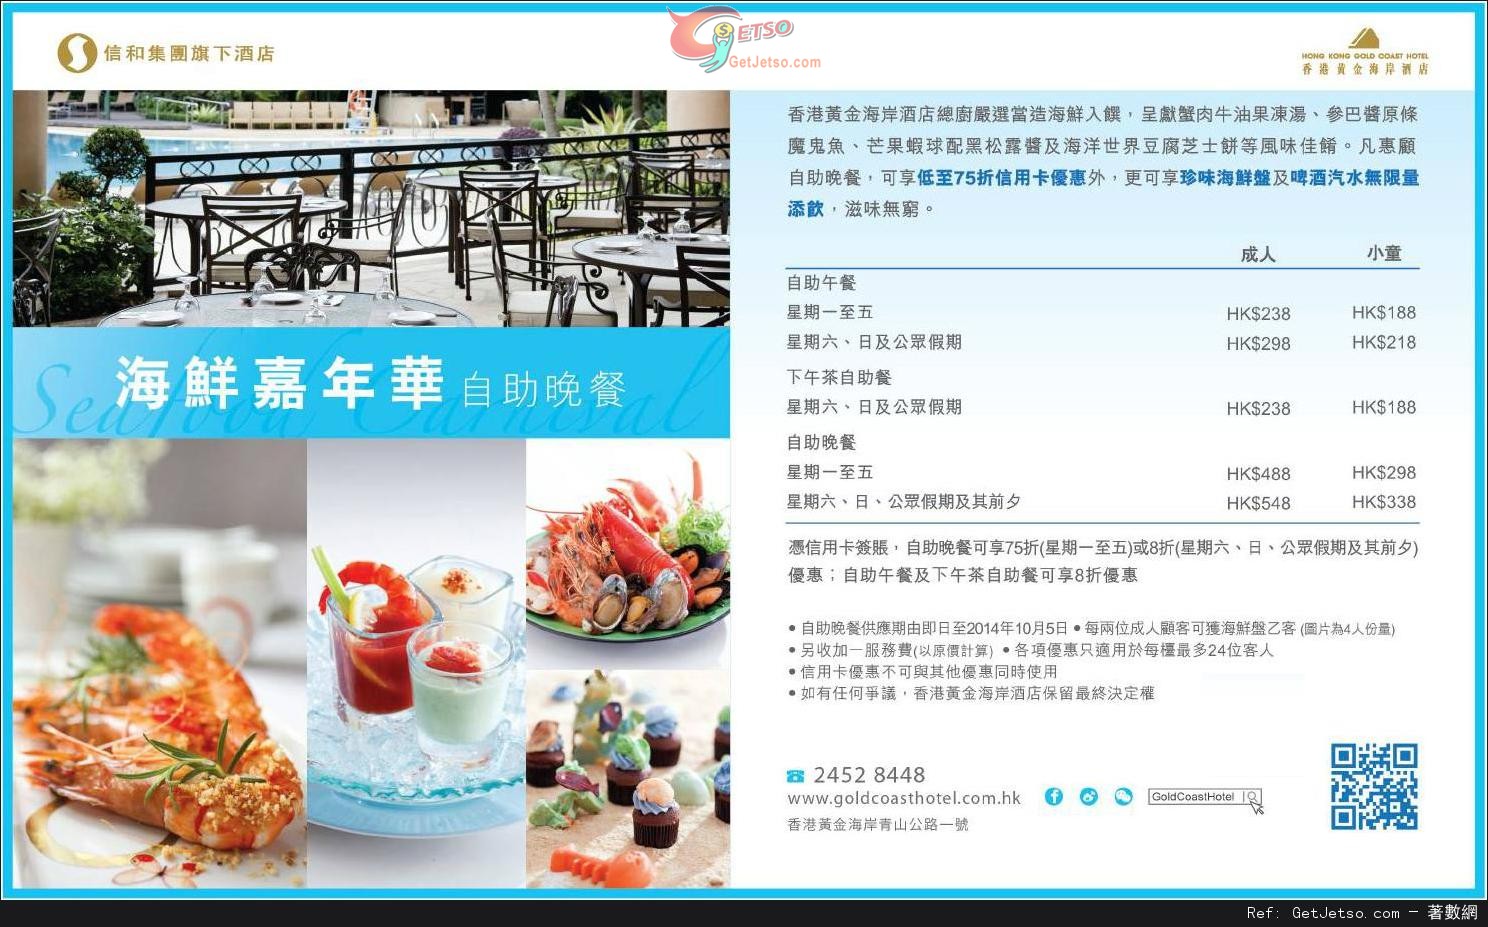 信用卡享香港黃金海岸酒店海鮮嘉年華自助晚餐低至75折優惠(至14年10月5日)圖片1